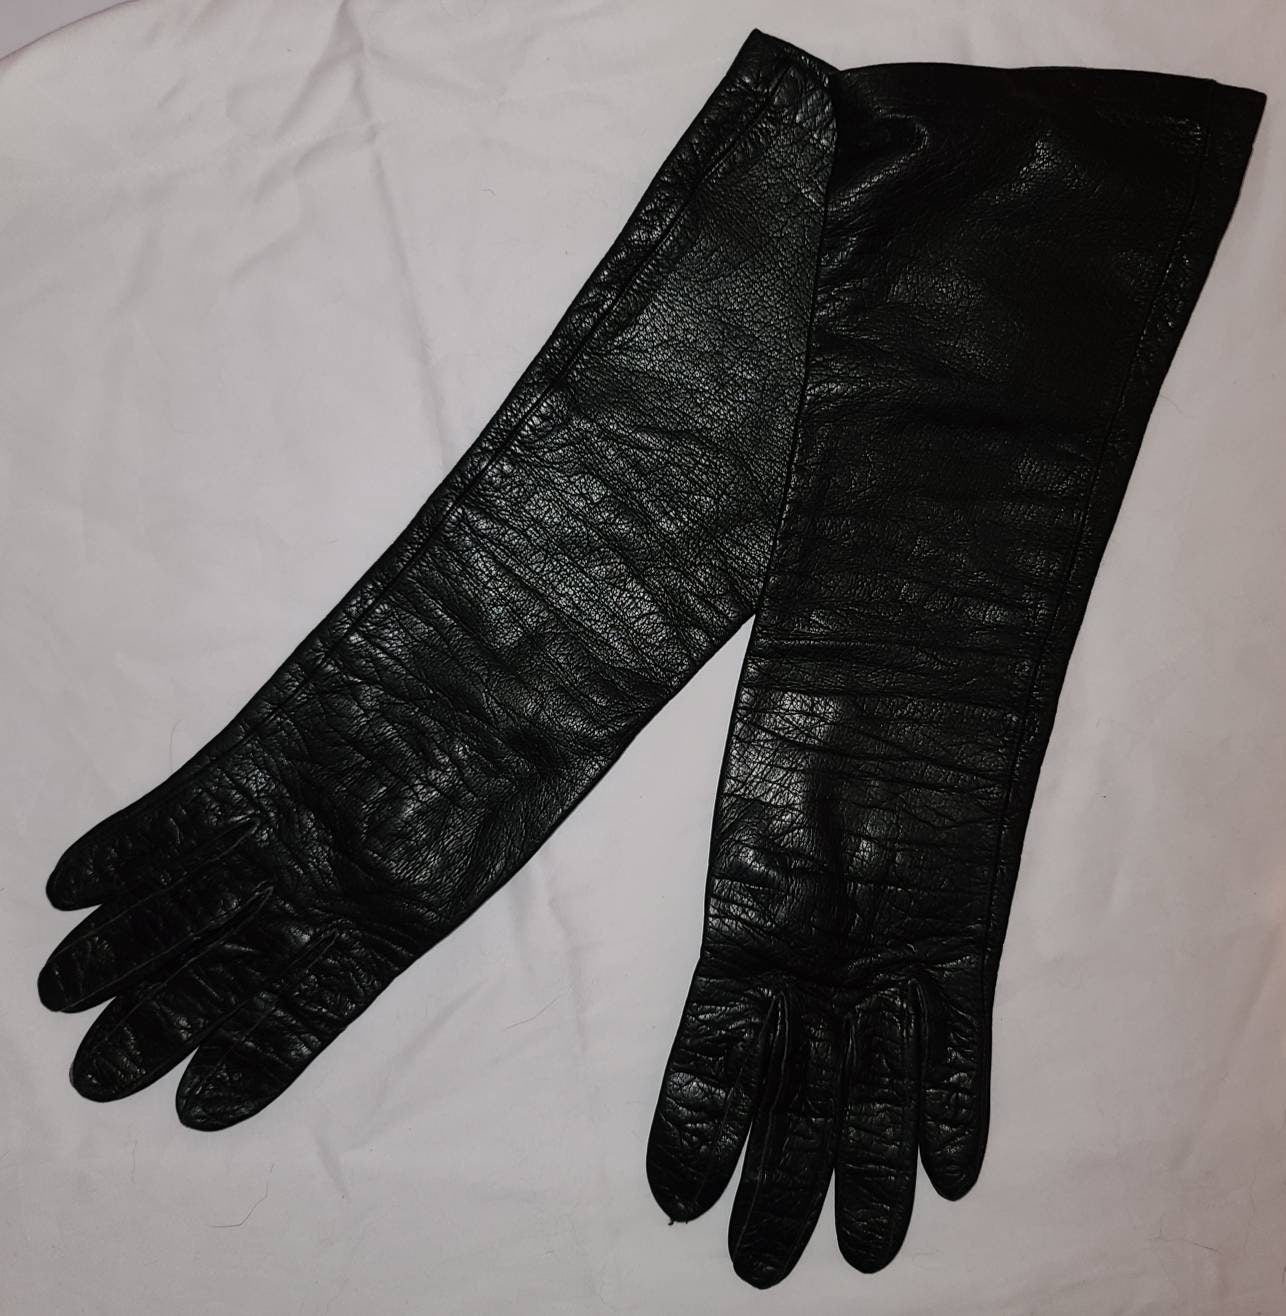 Vintage Leather Gloves 1950s Mid Length Black Leather Kidskin Lined Gloves Rockabilly Pinup Fetish